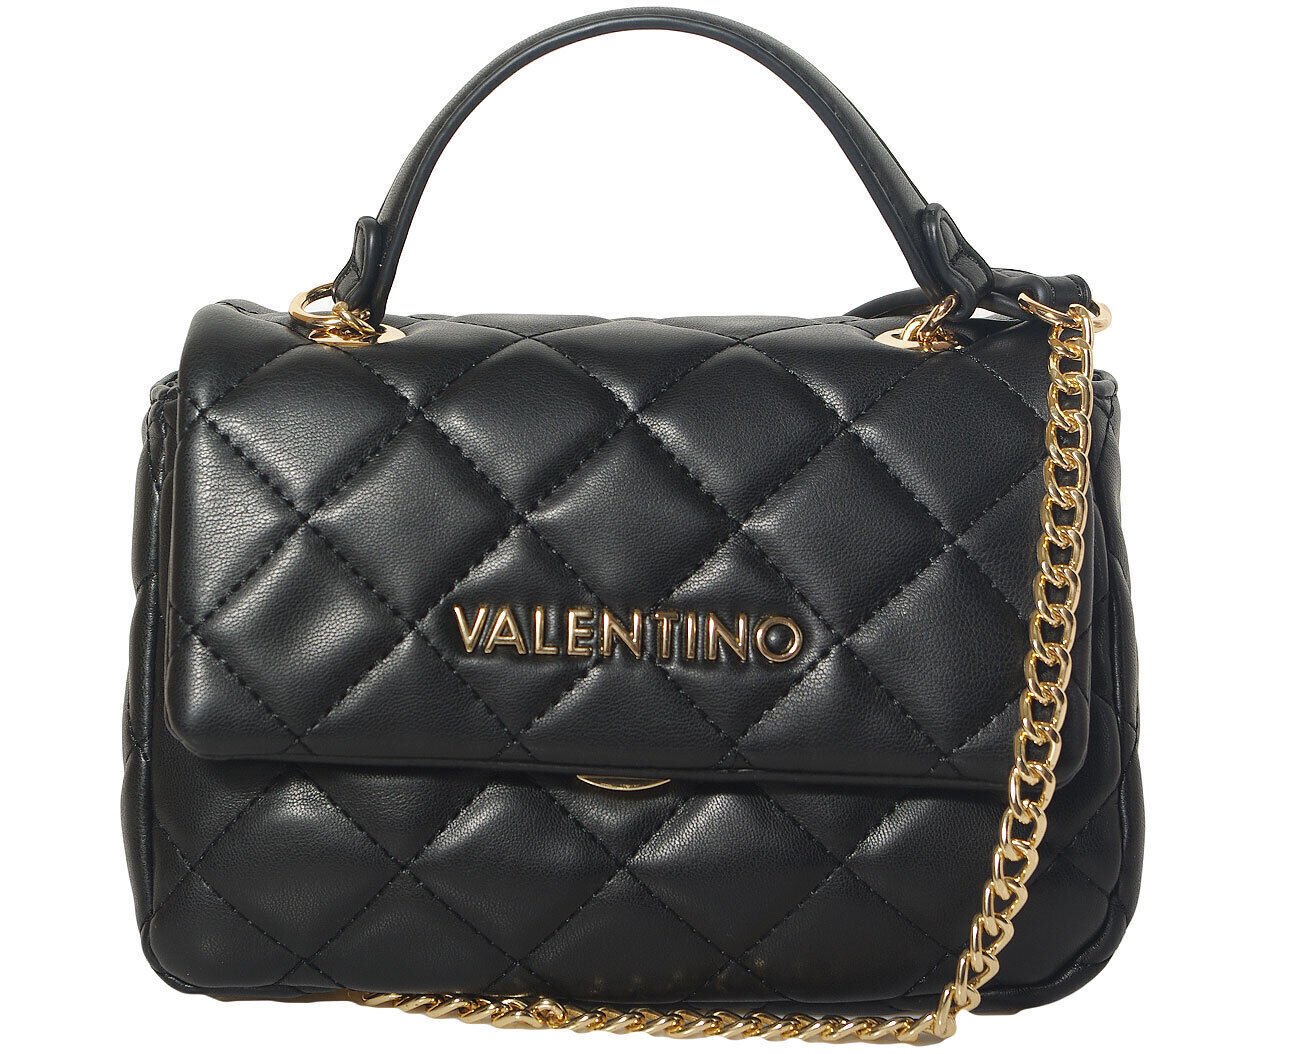 Valentino bags OCARINA bag nero borse a spalla VBS3KK05R Pattina 20 x 14 x 9 cm